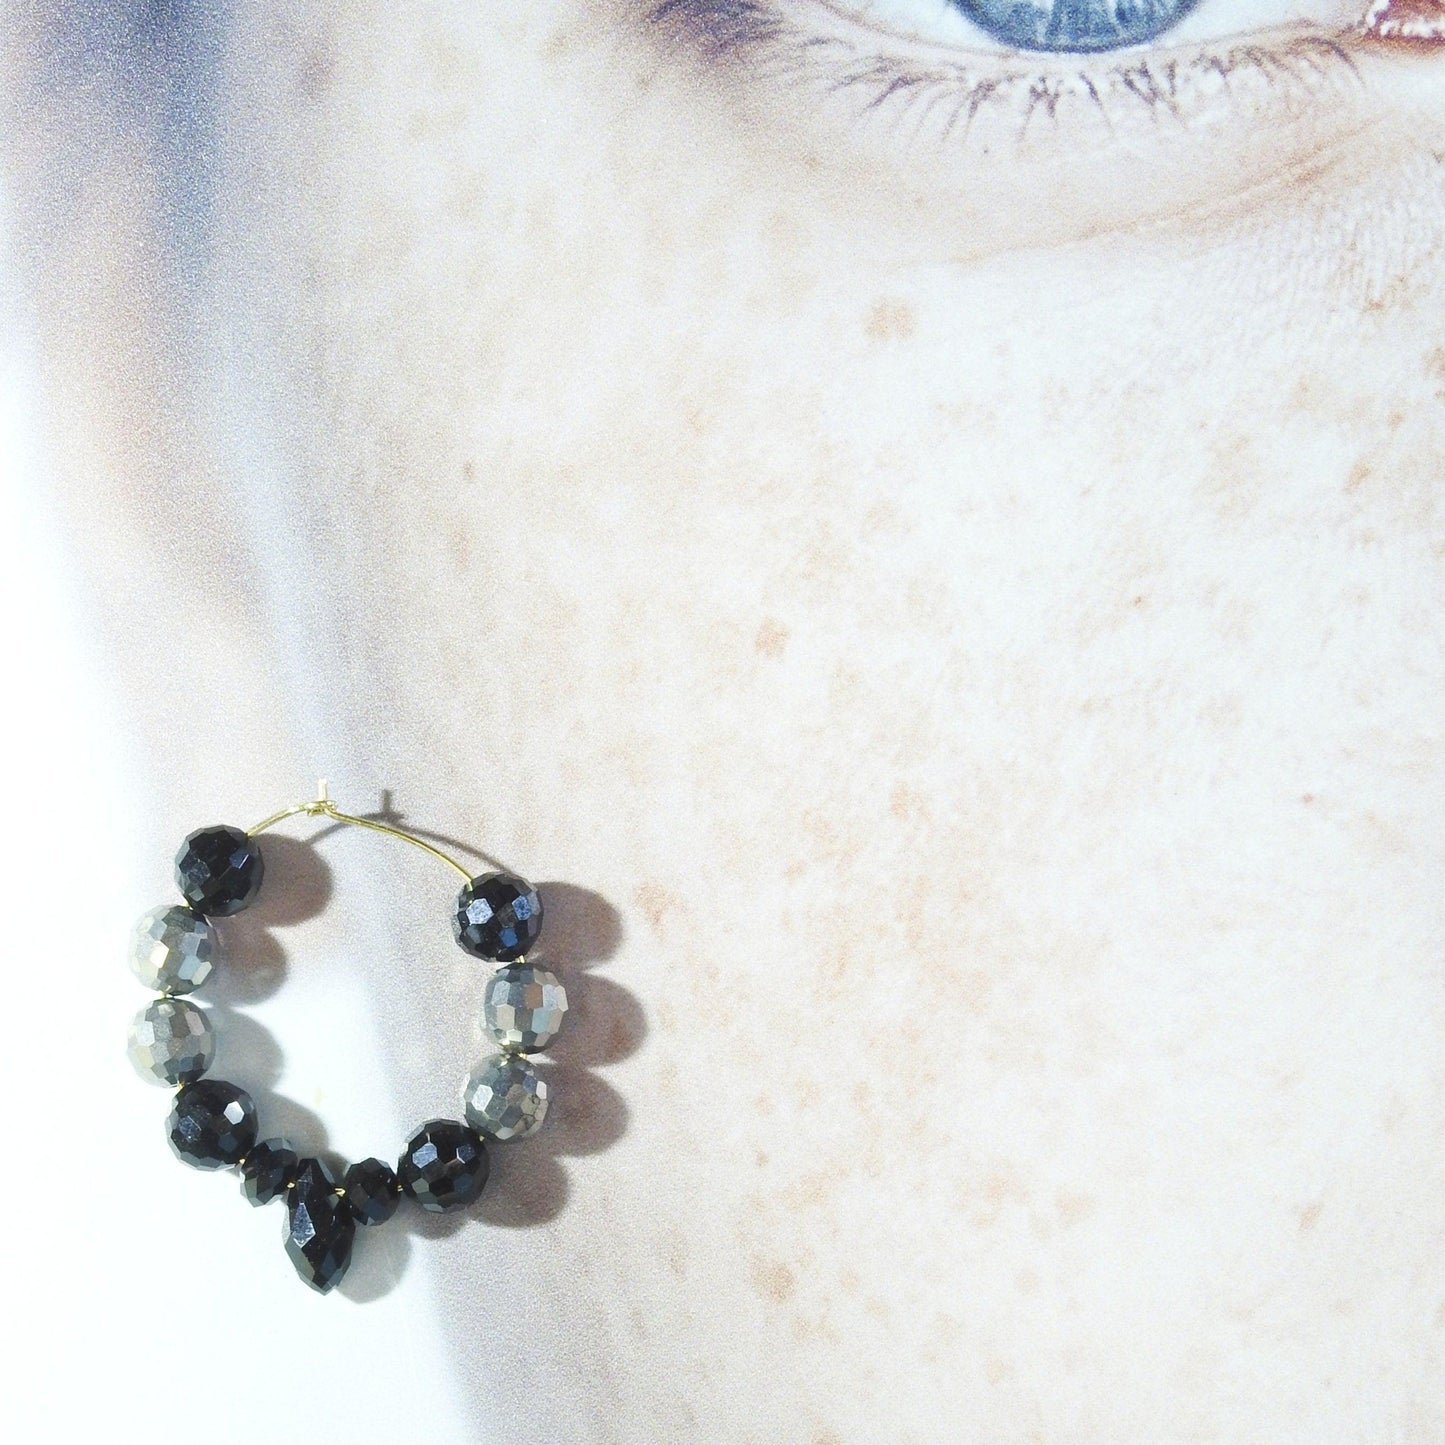 hoop earrings with beads